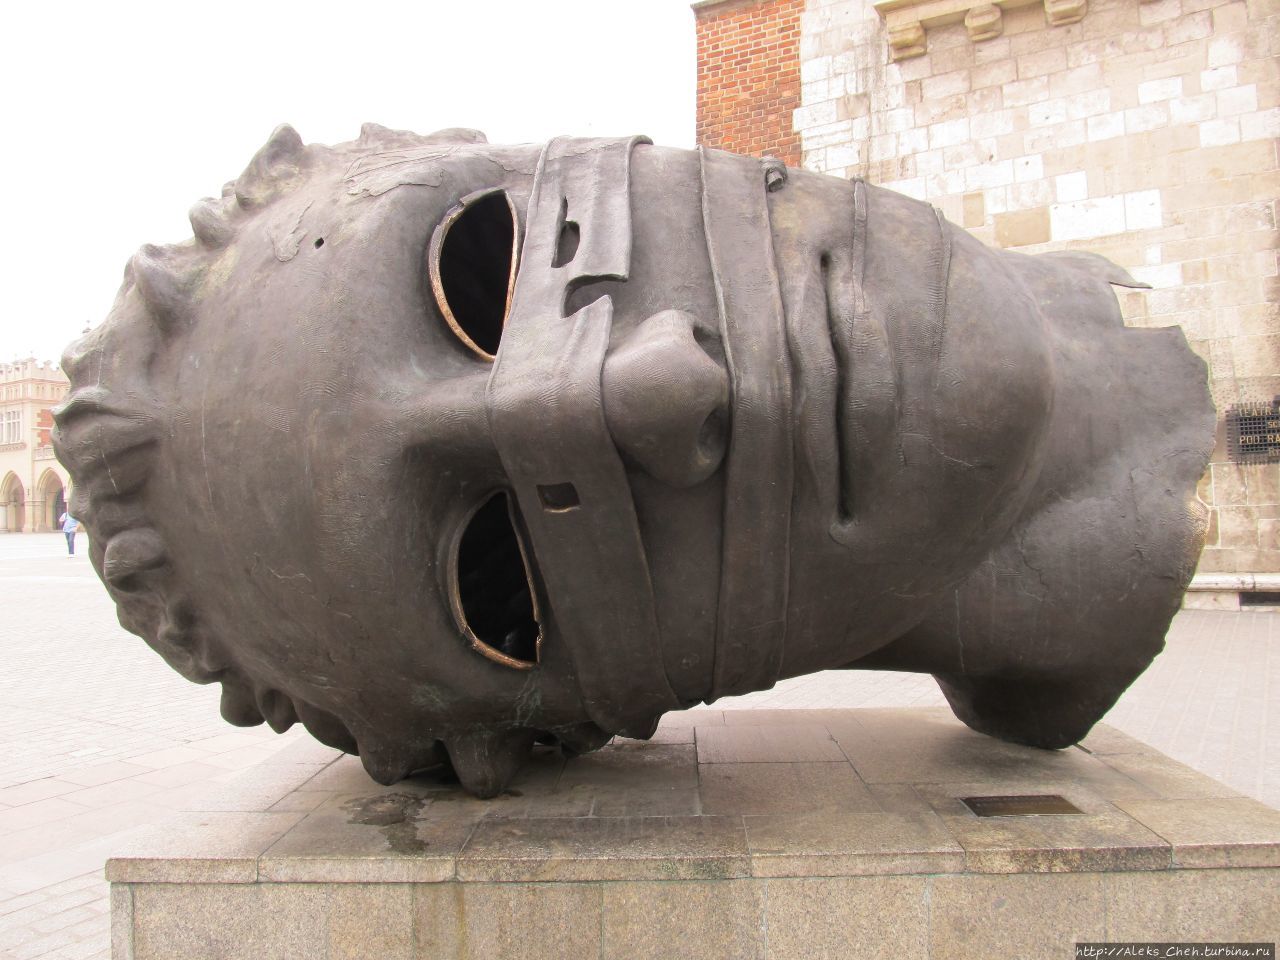 «Связанный Эрос» — скульптура, созданная польским художником Игорем Митораем и установленная на Рыночной площади в 2003 году. Краков, Польша